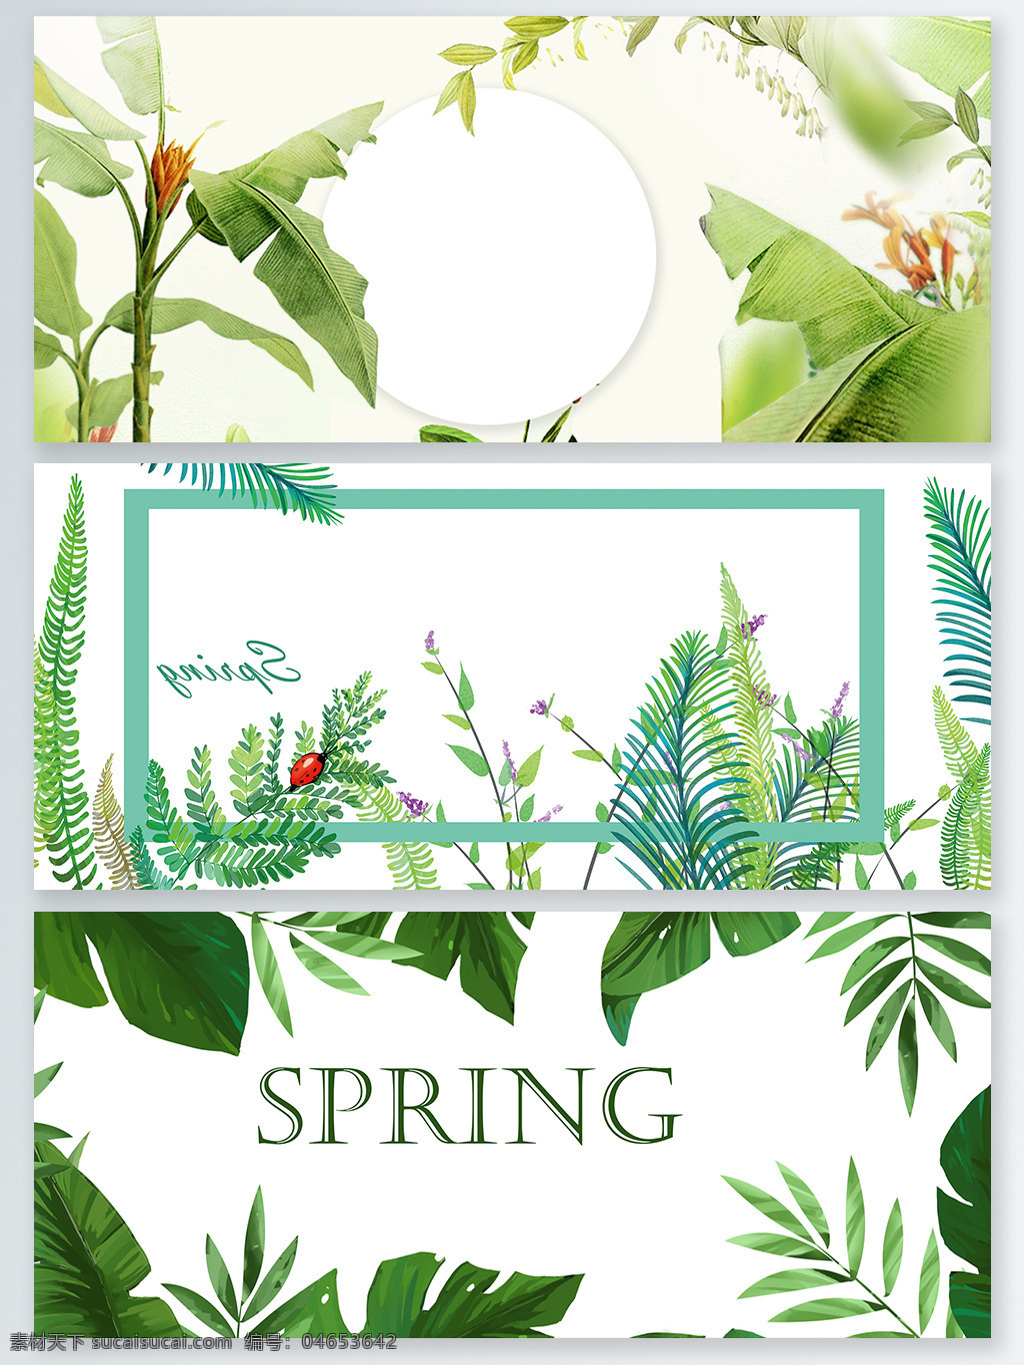 春季 绿植 清新 广告 背景 海报 春季促销 春天 绿色清新 手绘 水彩 万物复苏 叶子绿叶